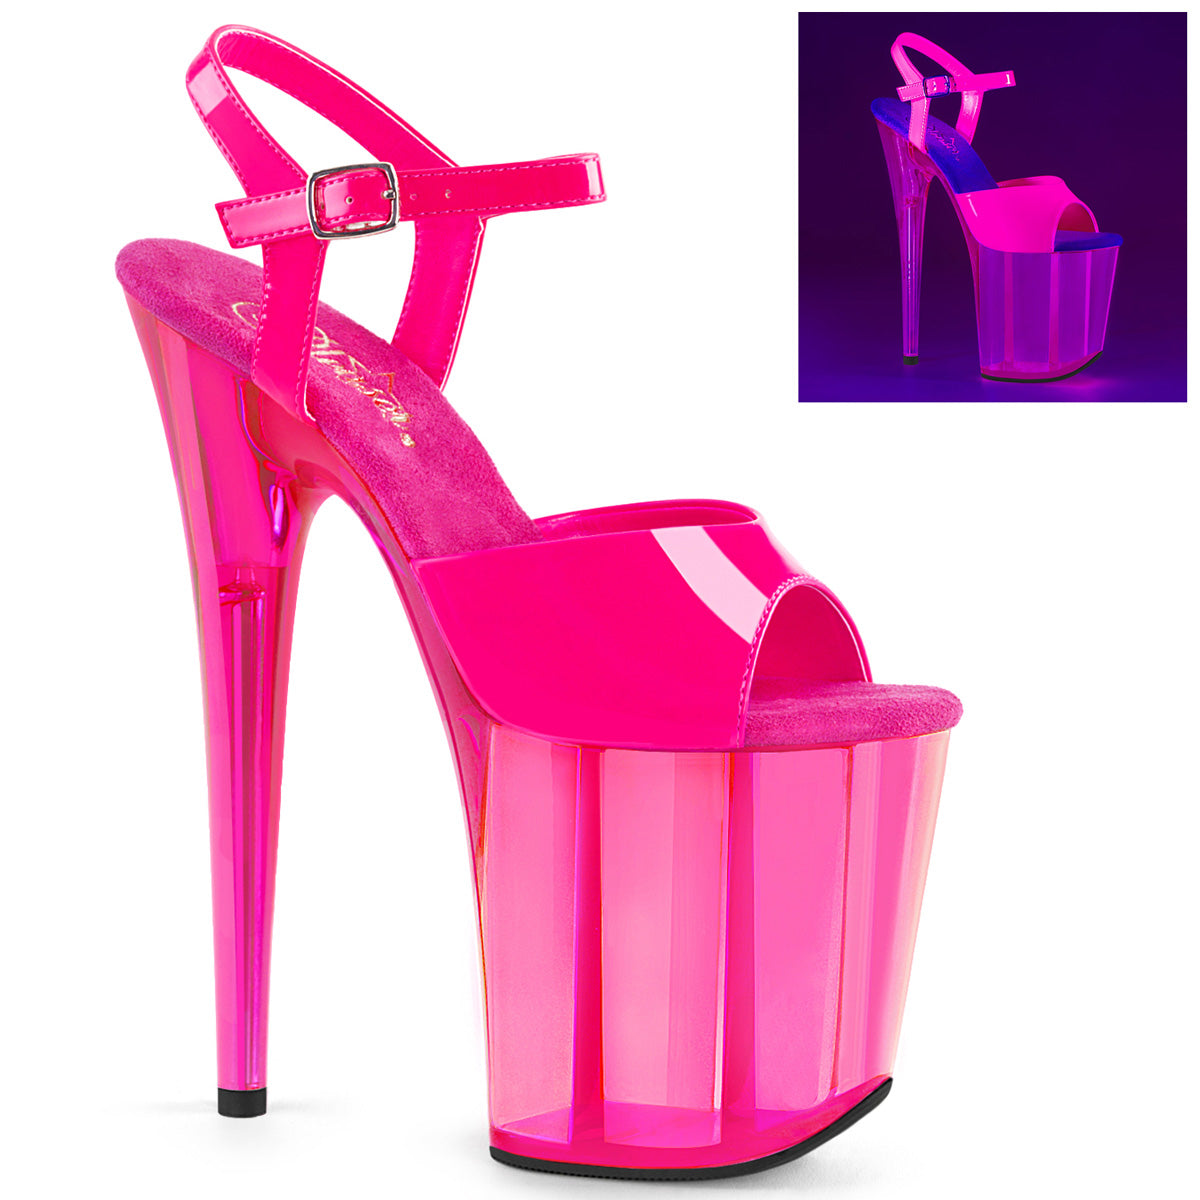 FLAMINGO-809UVT 8" Heel Neon Hot Pink  Stripper Platforms High Heels